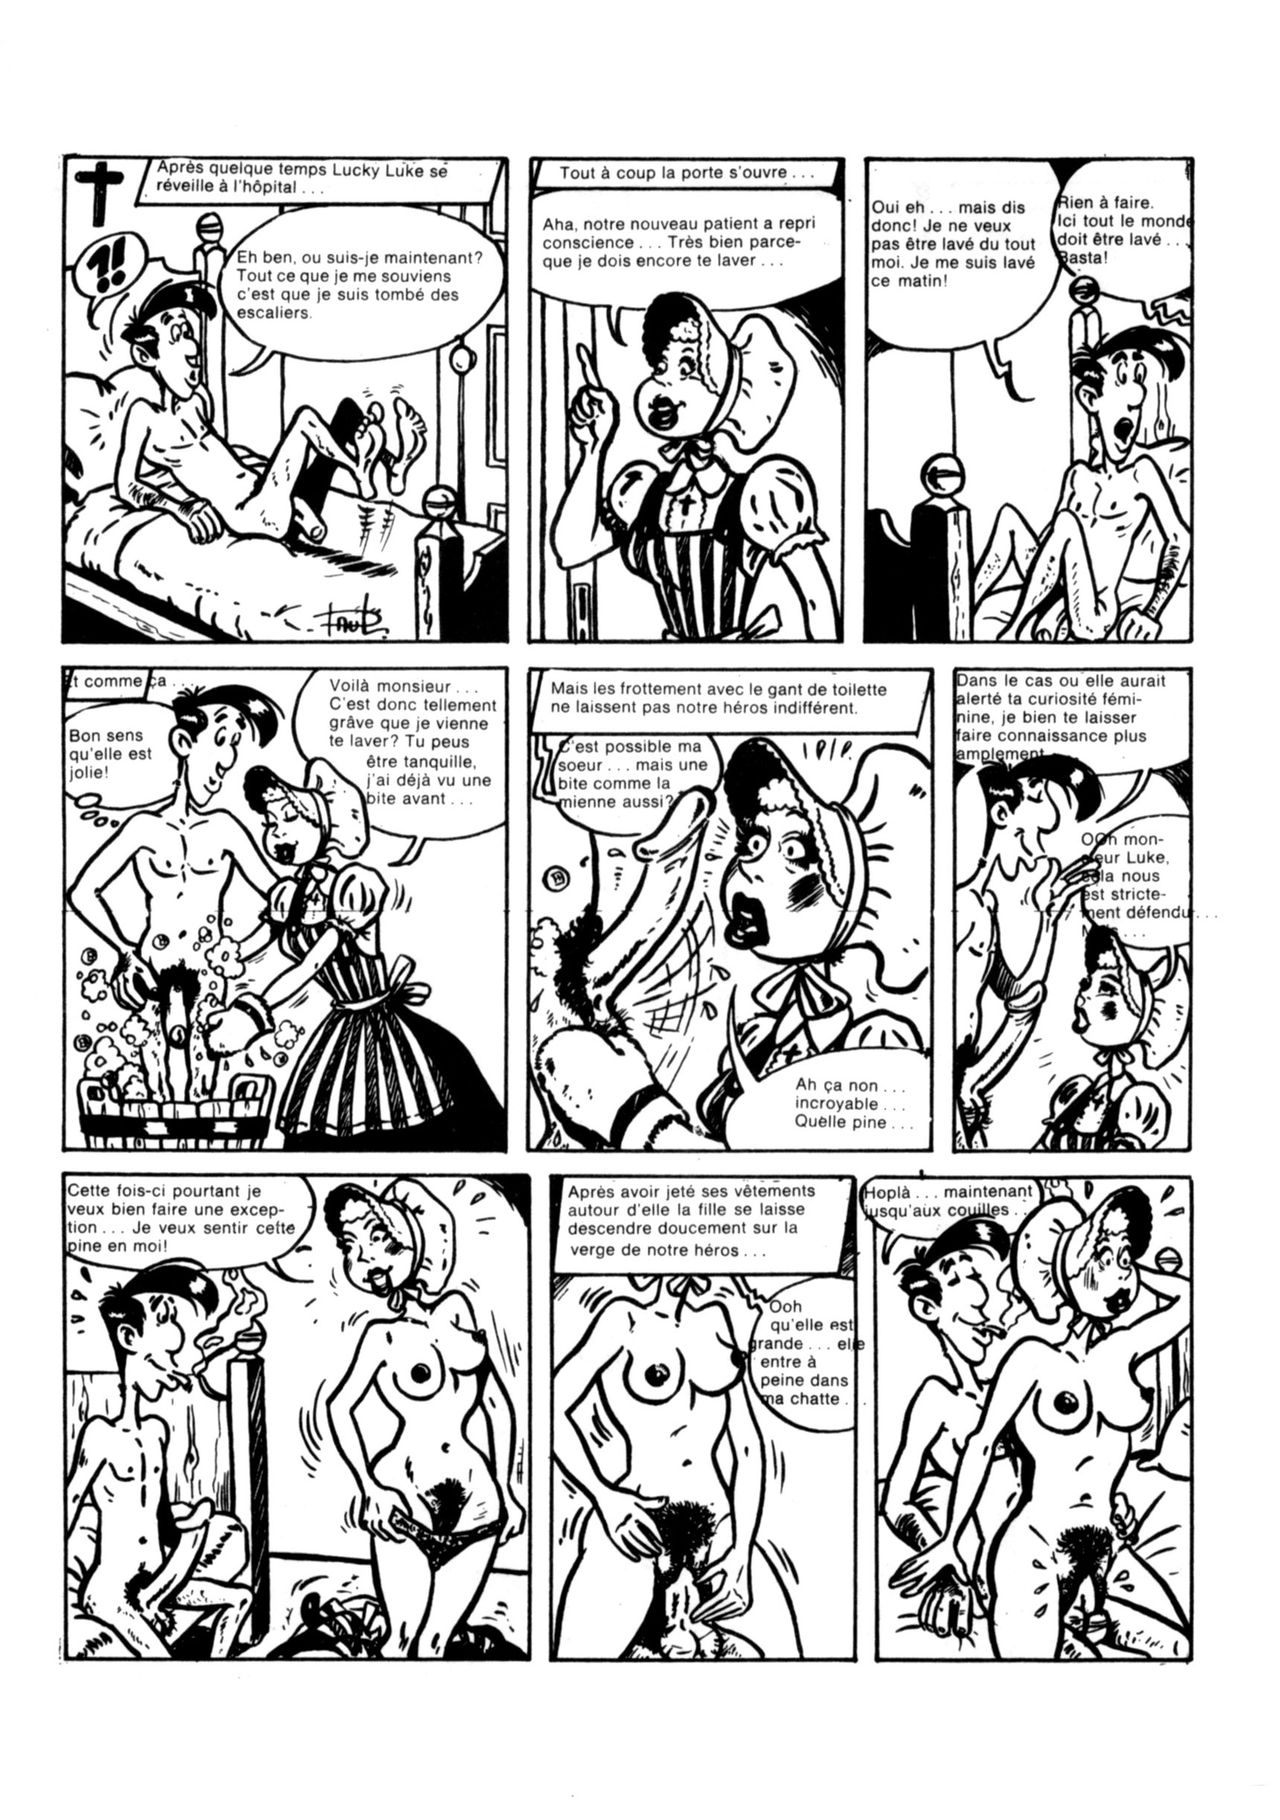 Schuurmans Les aventures sexuelles de Lucky Luke numero d'image 48